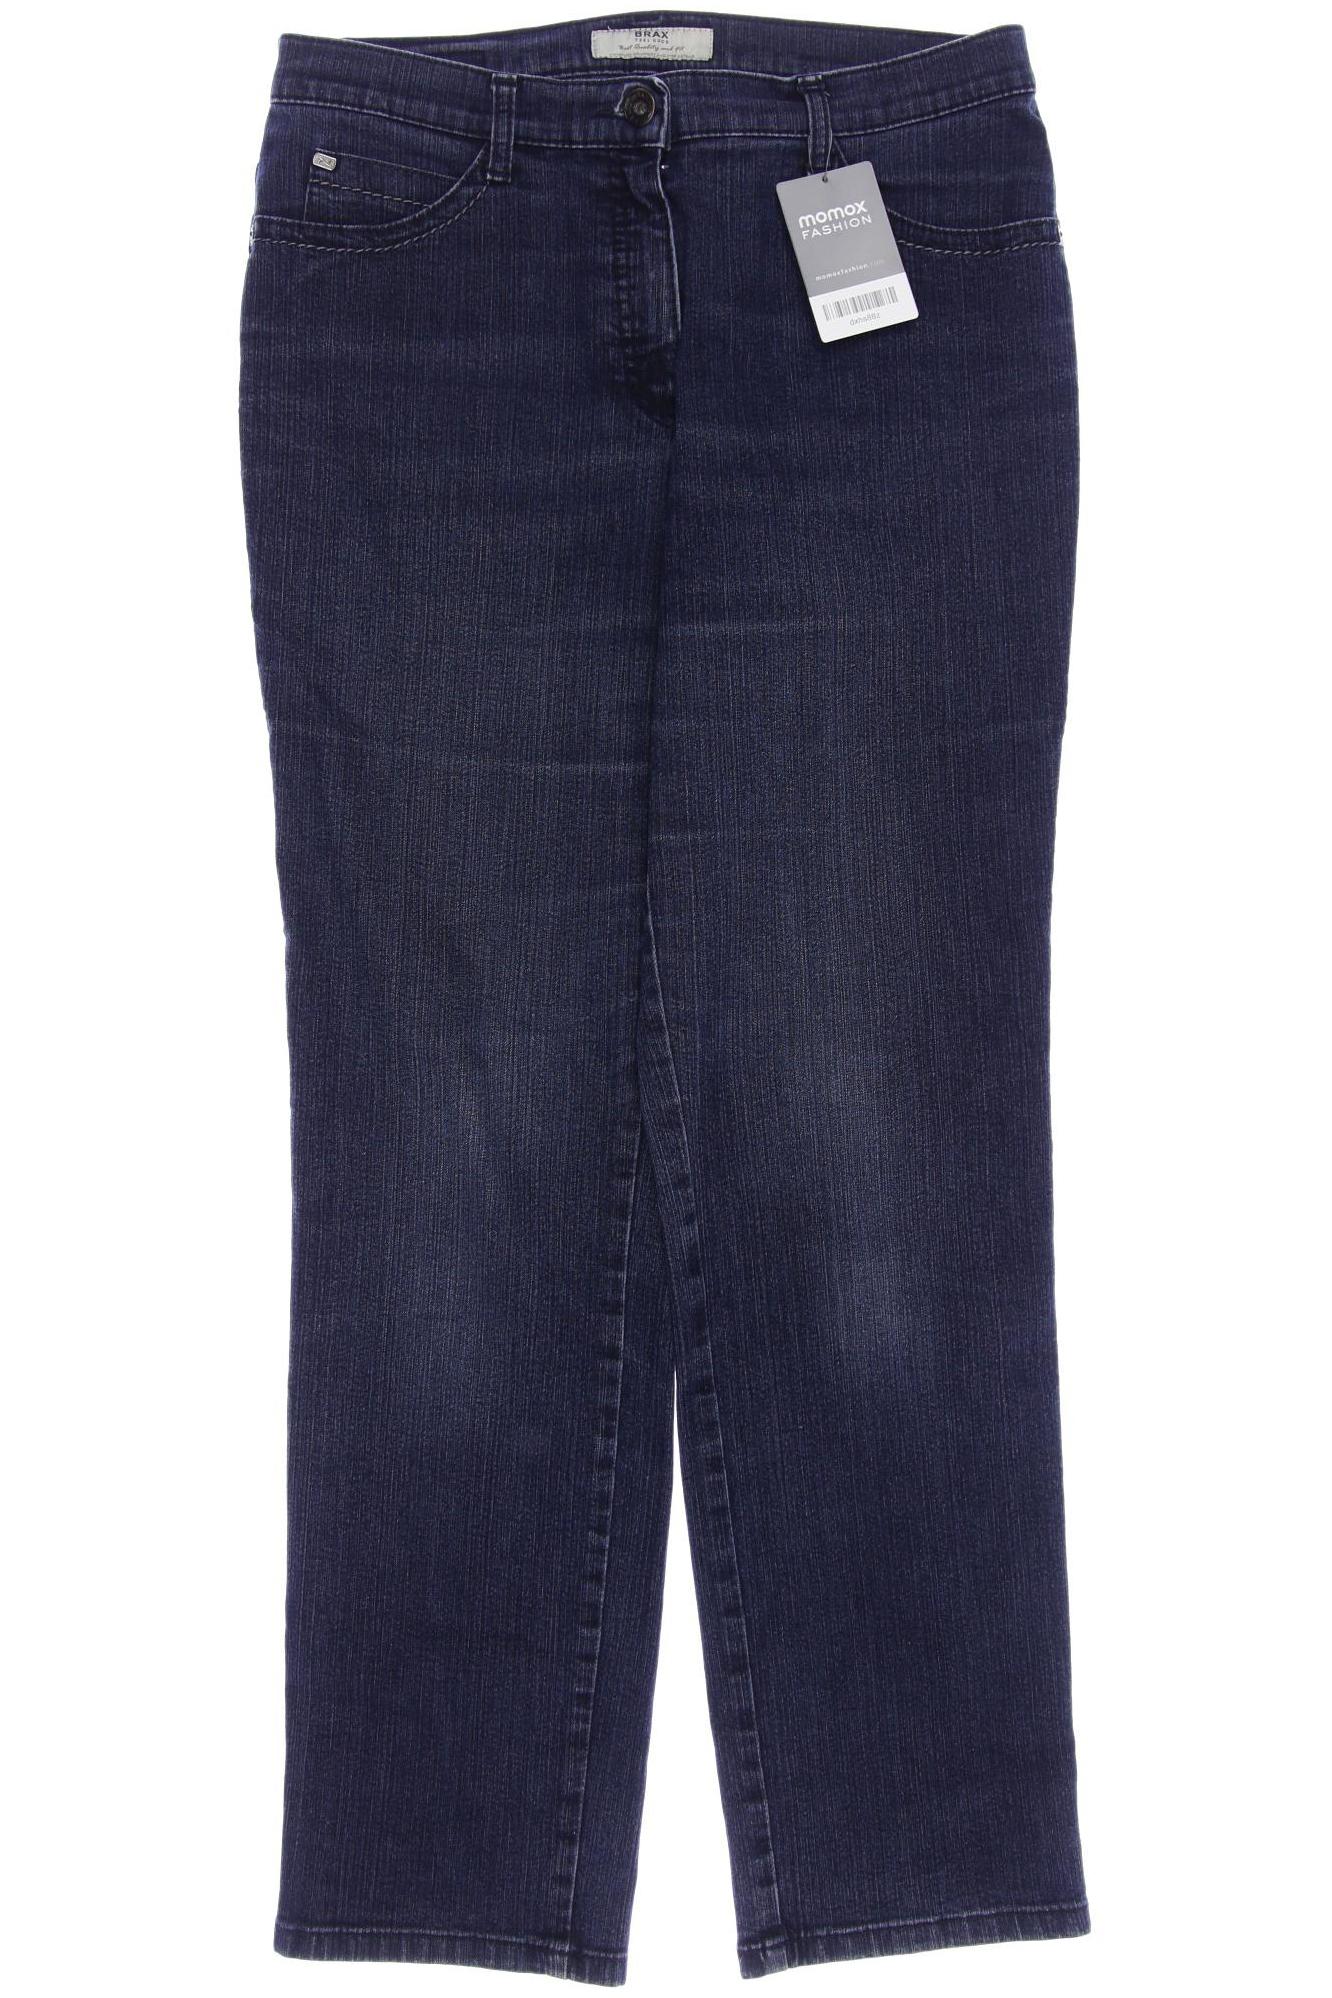 BRAX Damen Jeans, marineblau von BRAX